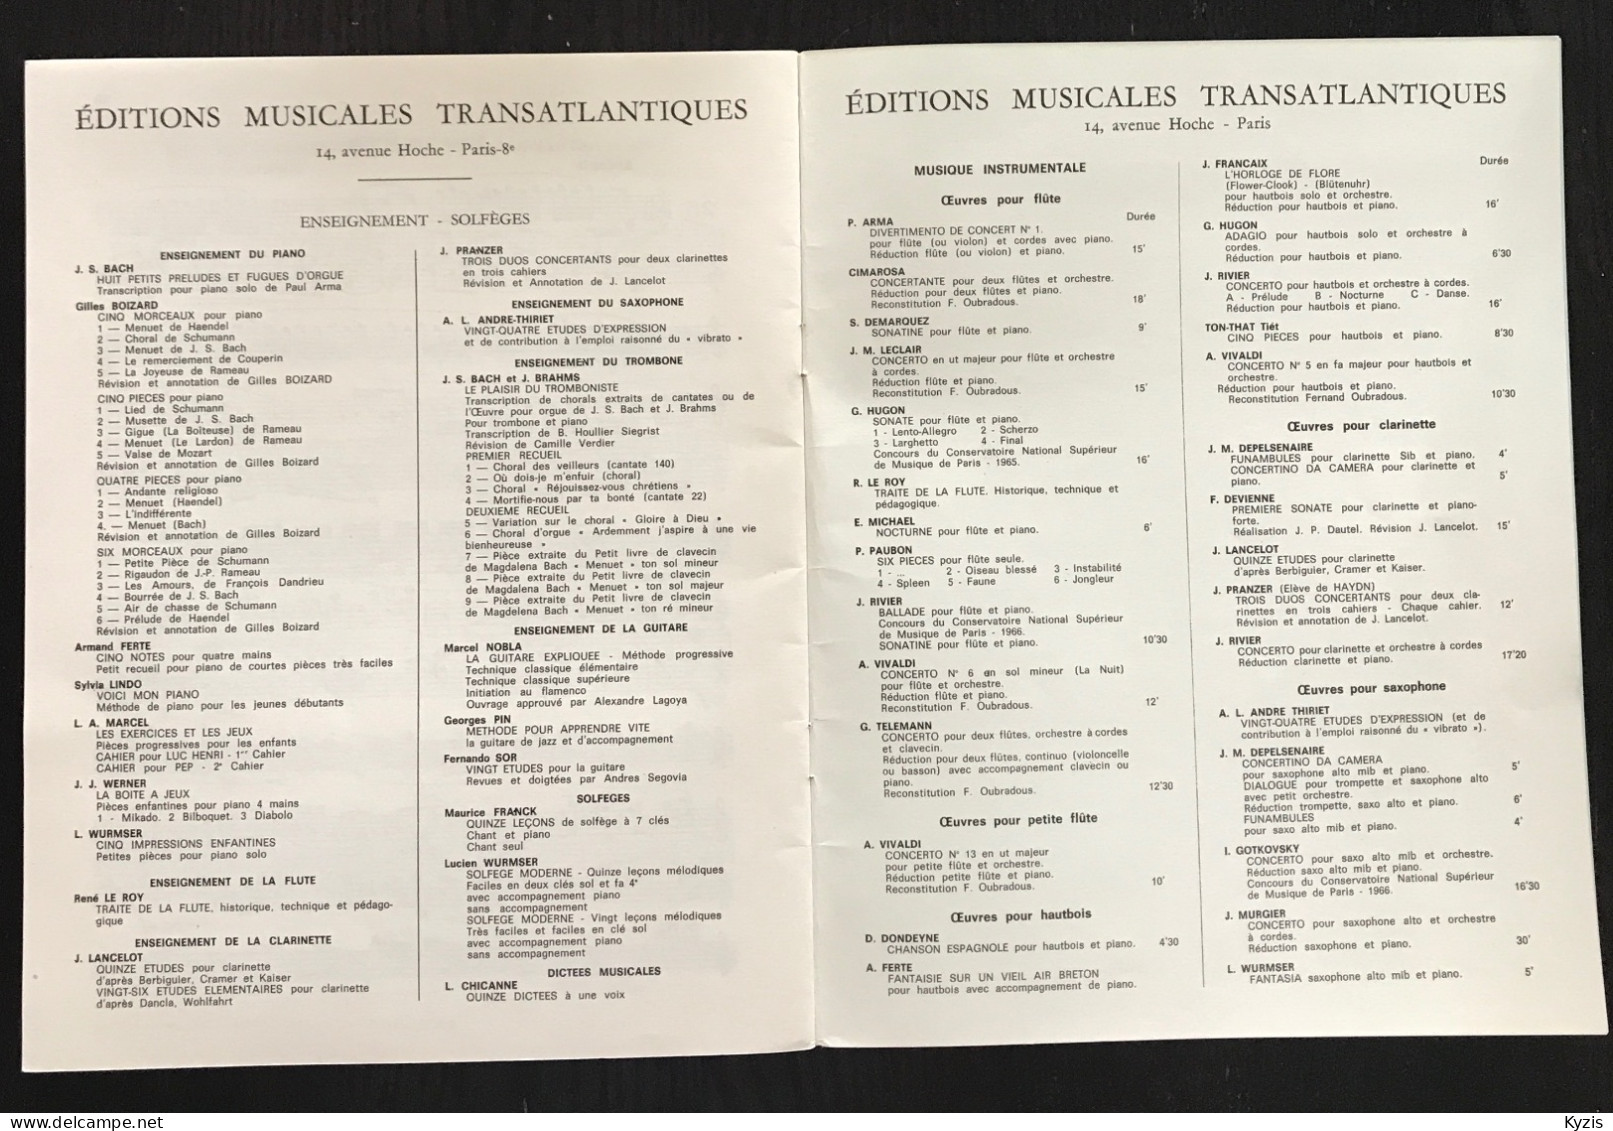 JACQUES LANCELOT - Vingt Cinq études Faciles Et Progressives Pour Clarinette - DÉDICACÉ PAR JACQUES LANCELOT -1969- - Etude & Enseignement